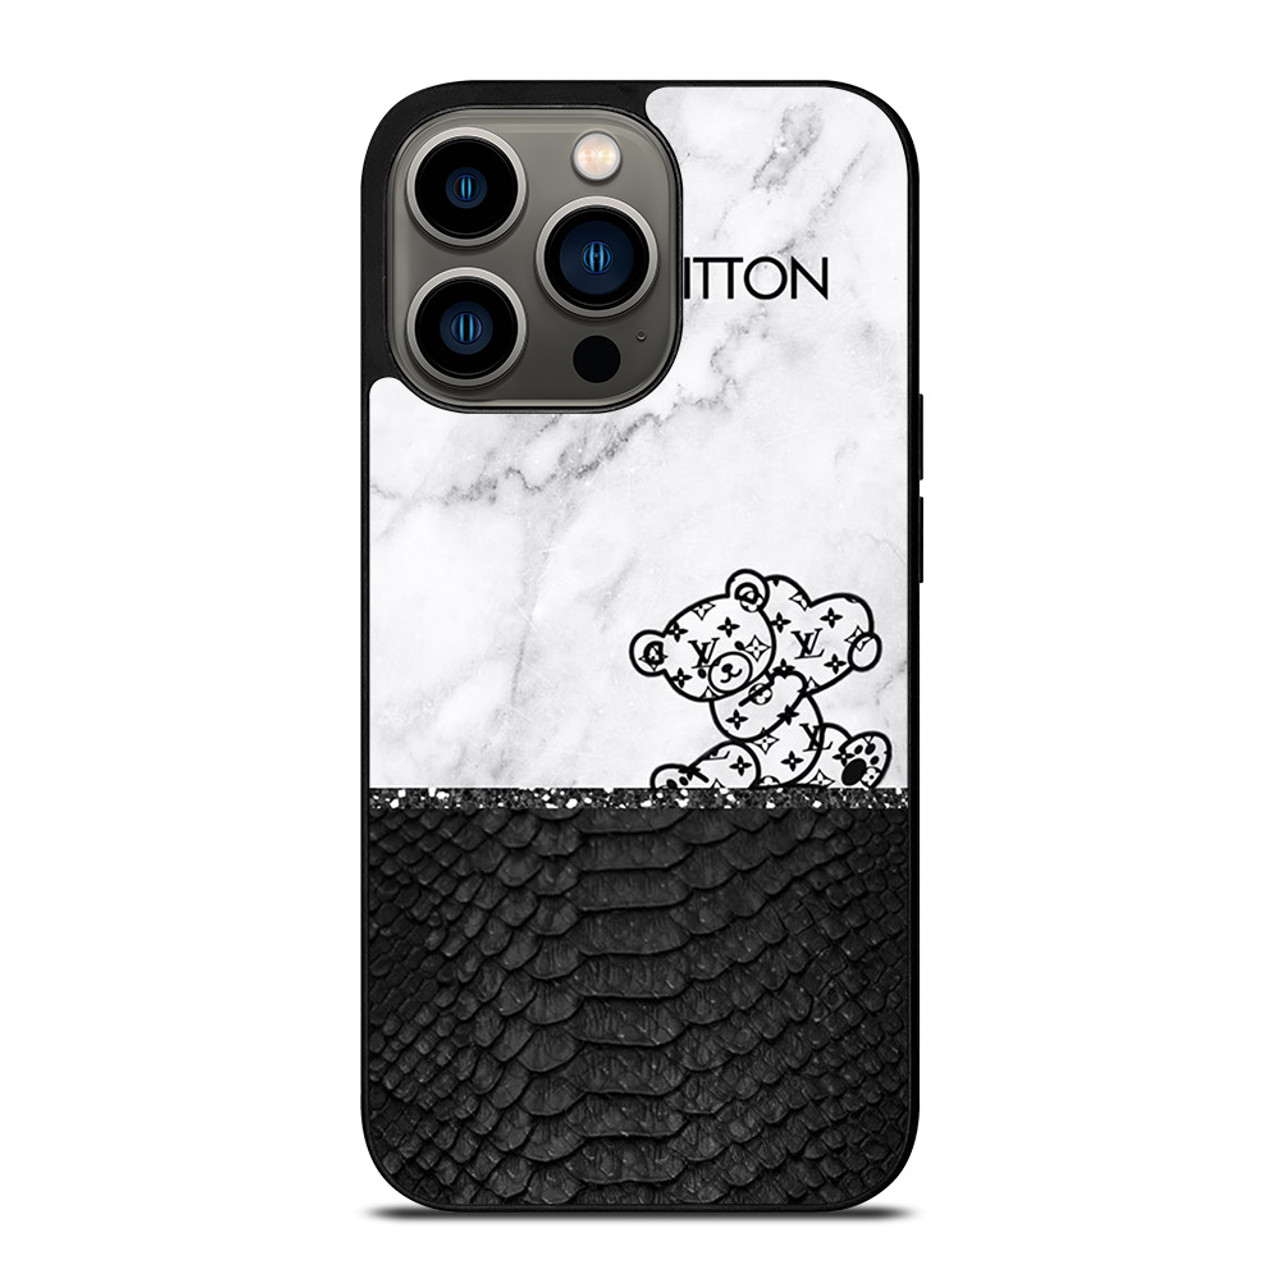 IPhone 13 Case - Louis Vuitton Black